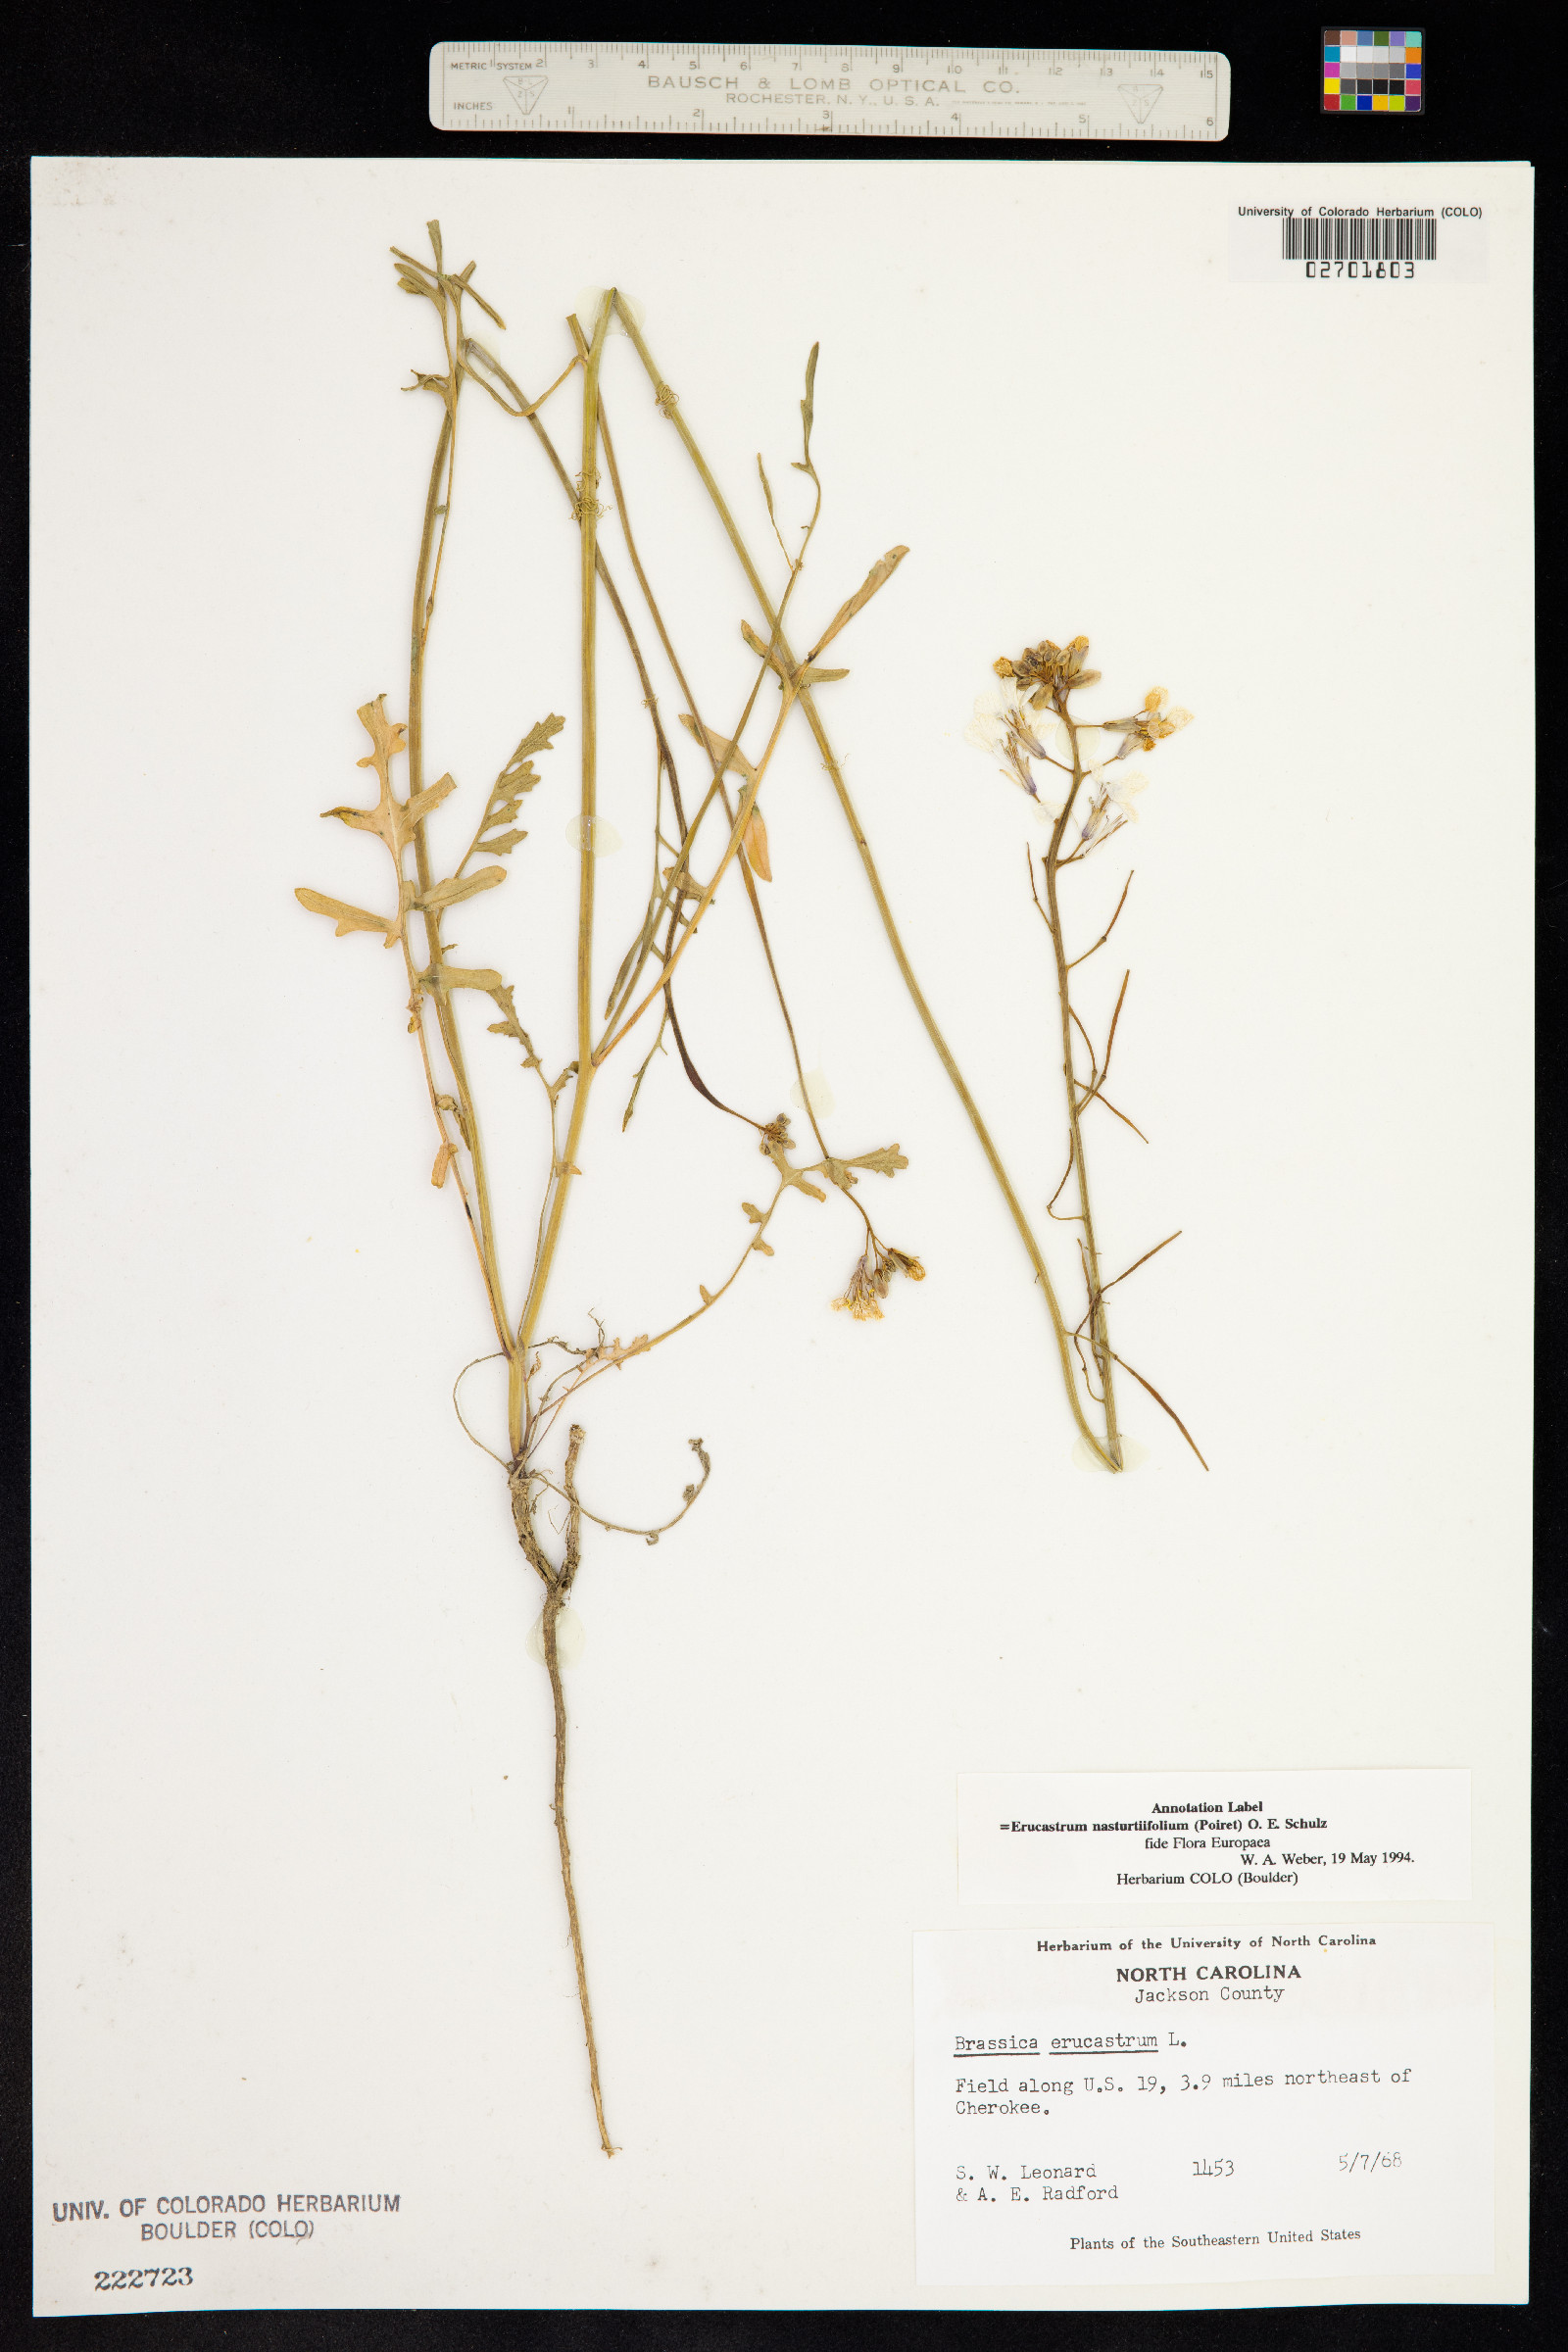 Erucastrum nasturtiifolium image